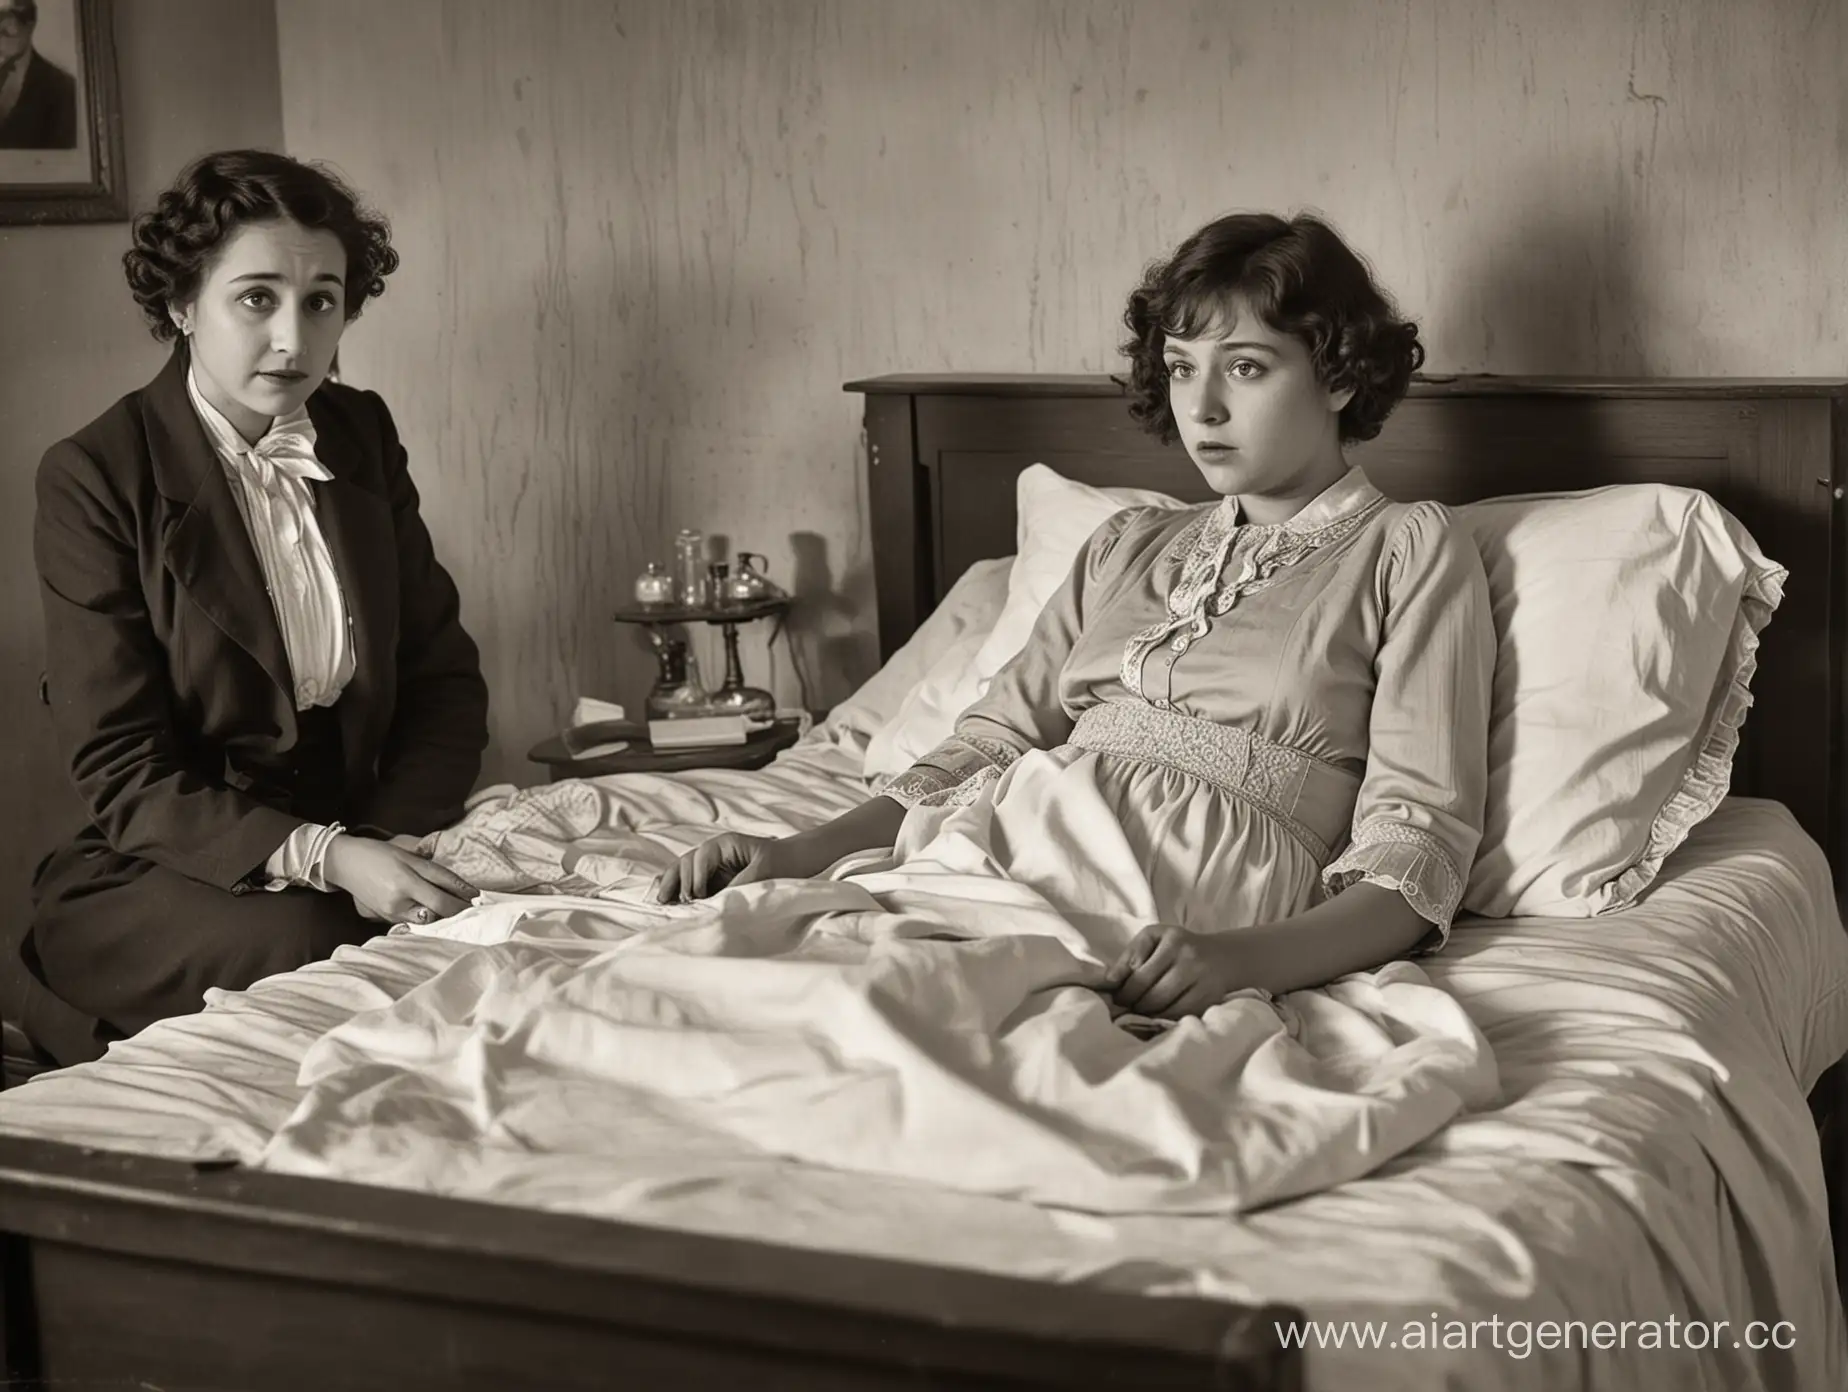 Радиевая девушка с разрушенной челюстью мучается, умирая в своей кровати. Рядом стоят грустные родственники. Реалистичное фото. Стиль 1917 года.